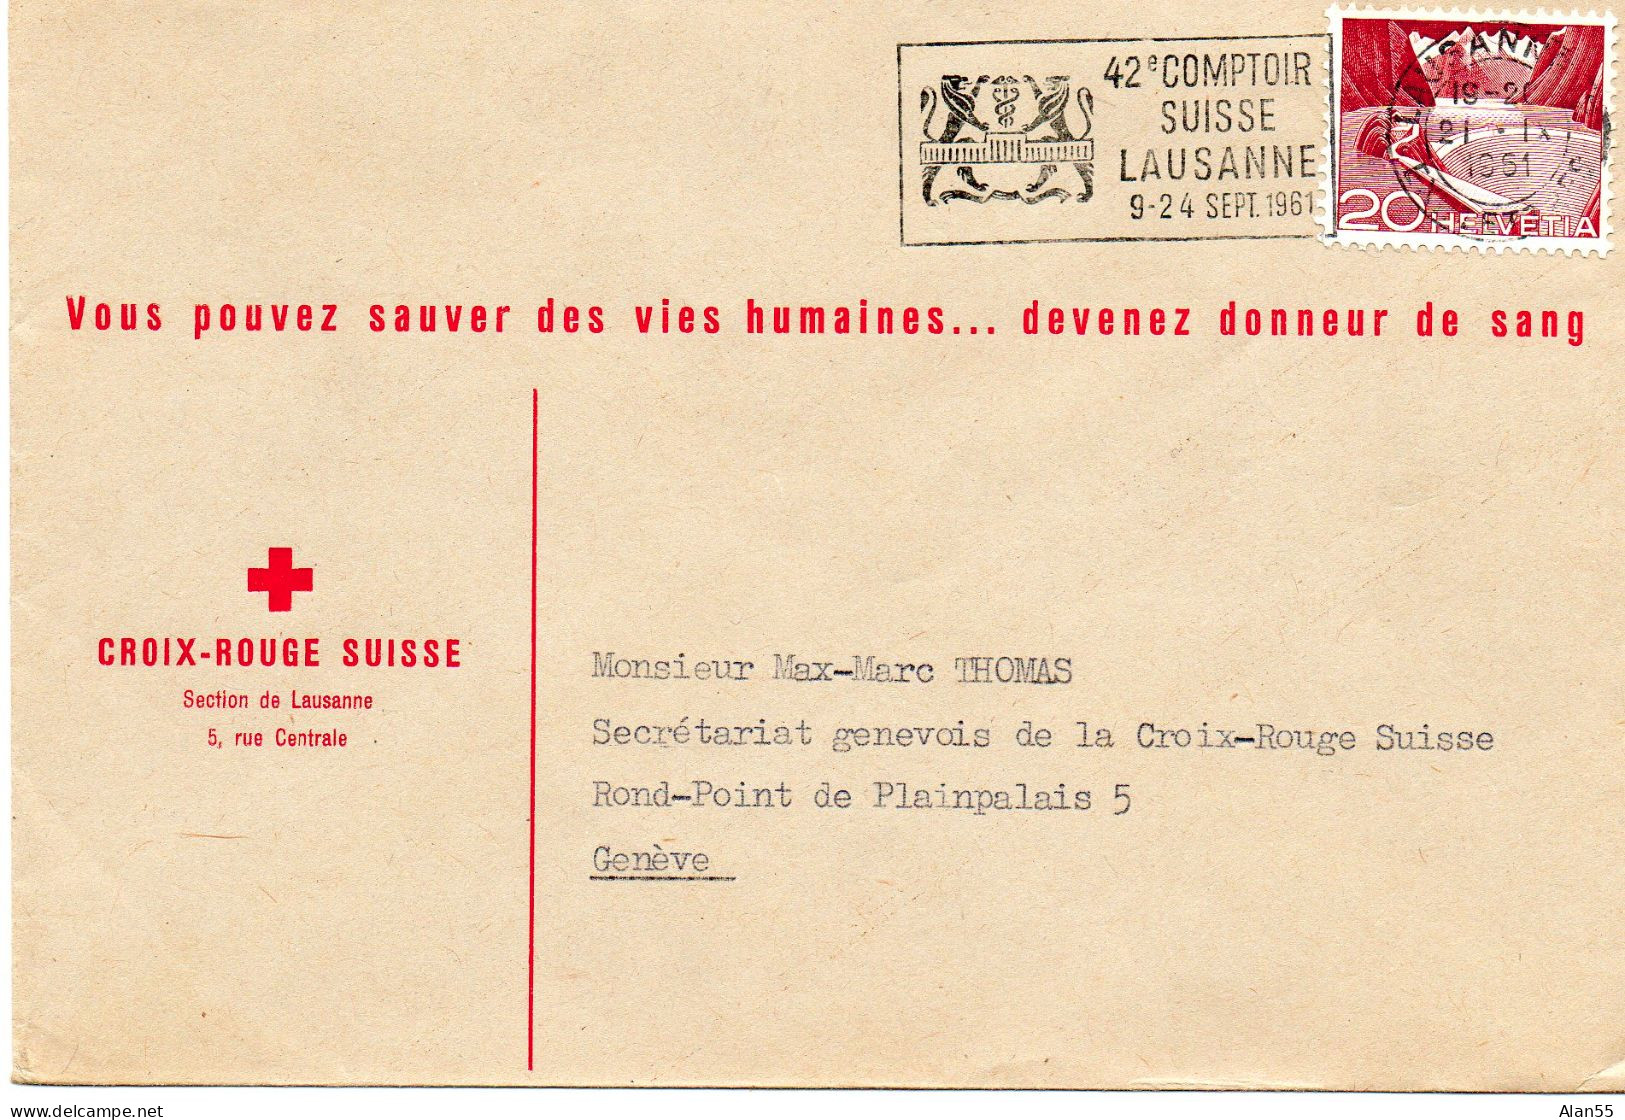 SUISSE.1951.  "42e COMPTOIR SUISSE LAUSANNE…". CROIX-ROUGE SUISSE - Fabriken Und Industrien